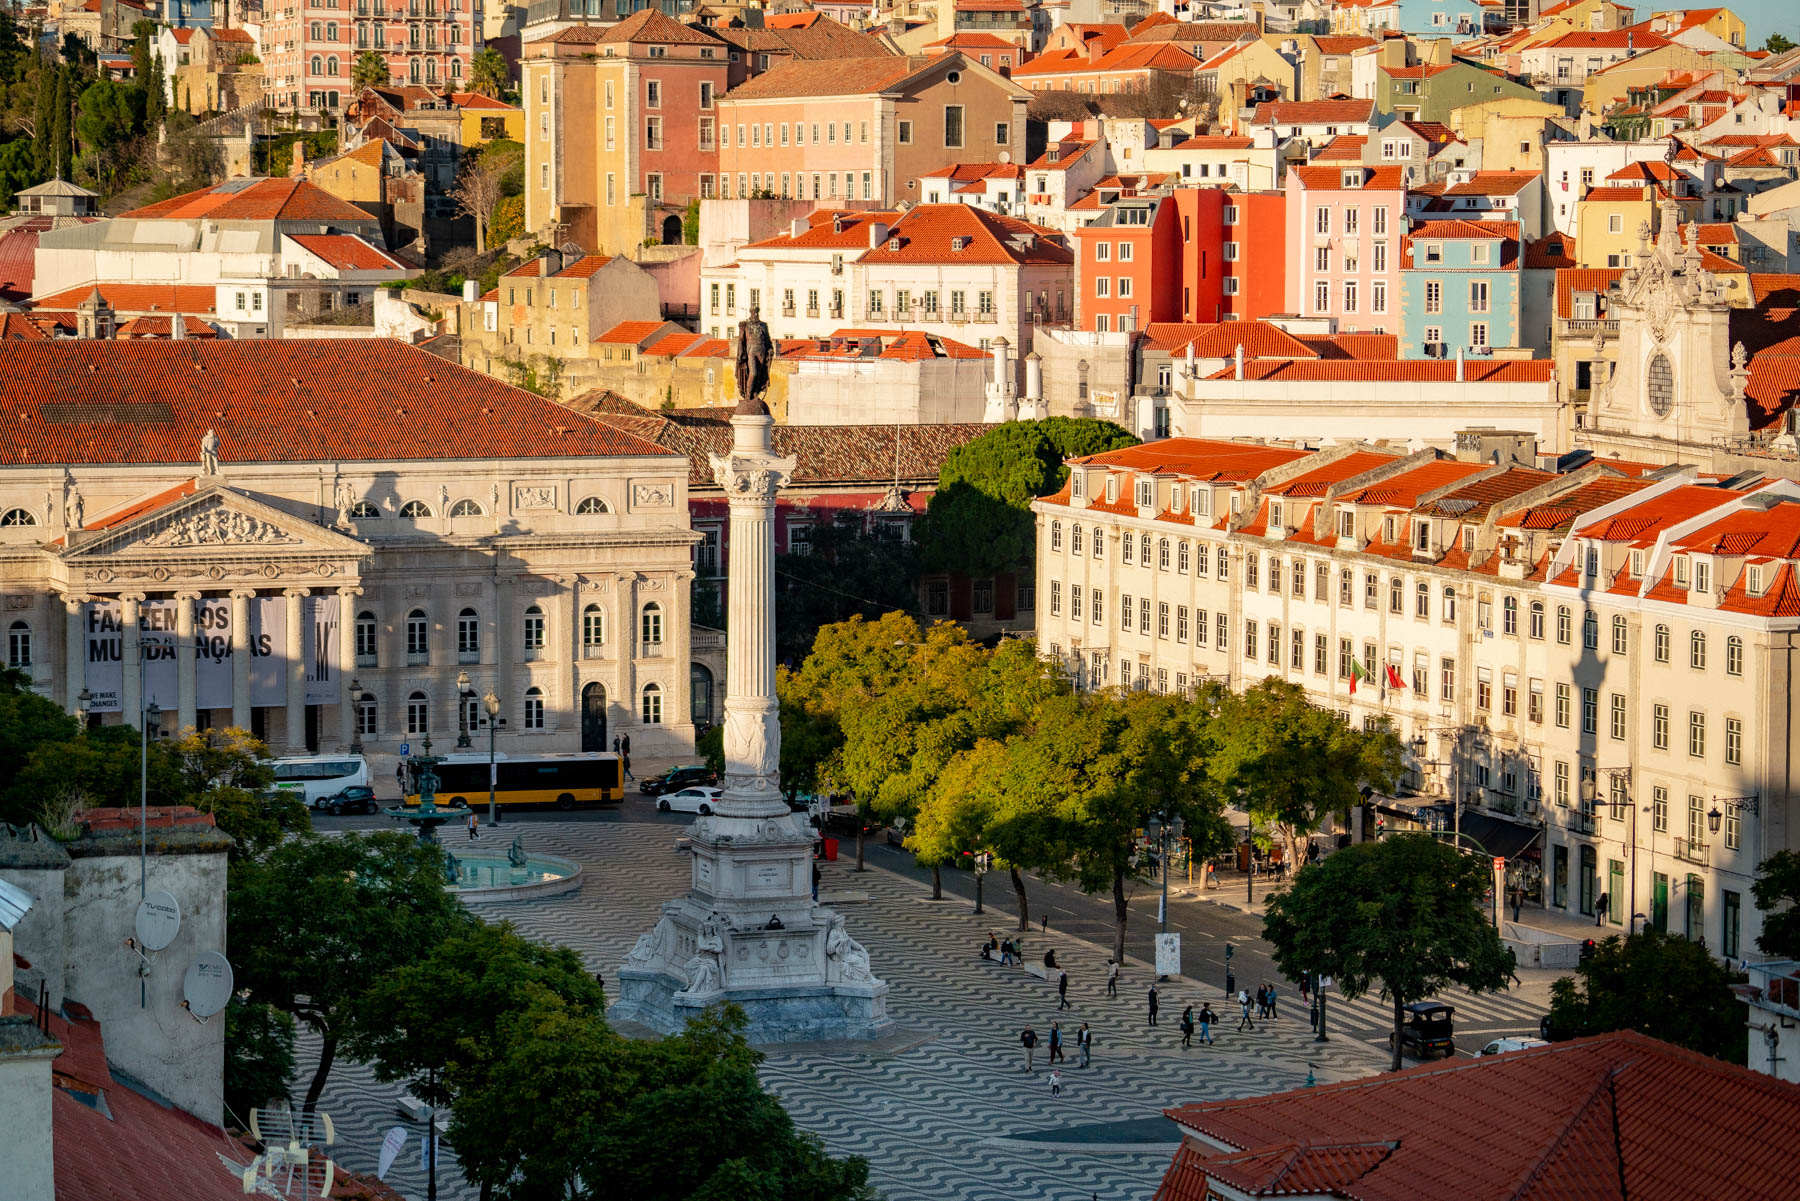 Rossio Square Lisbon